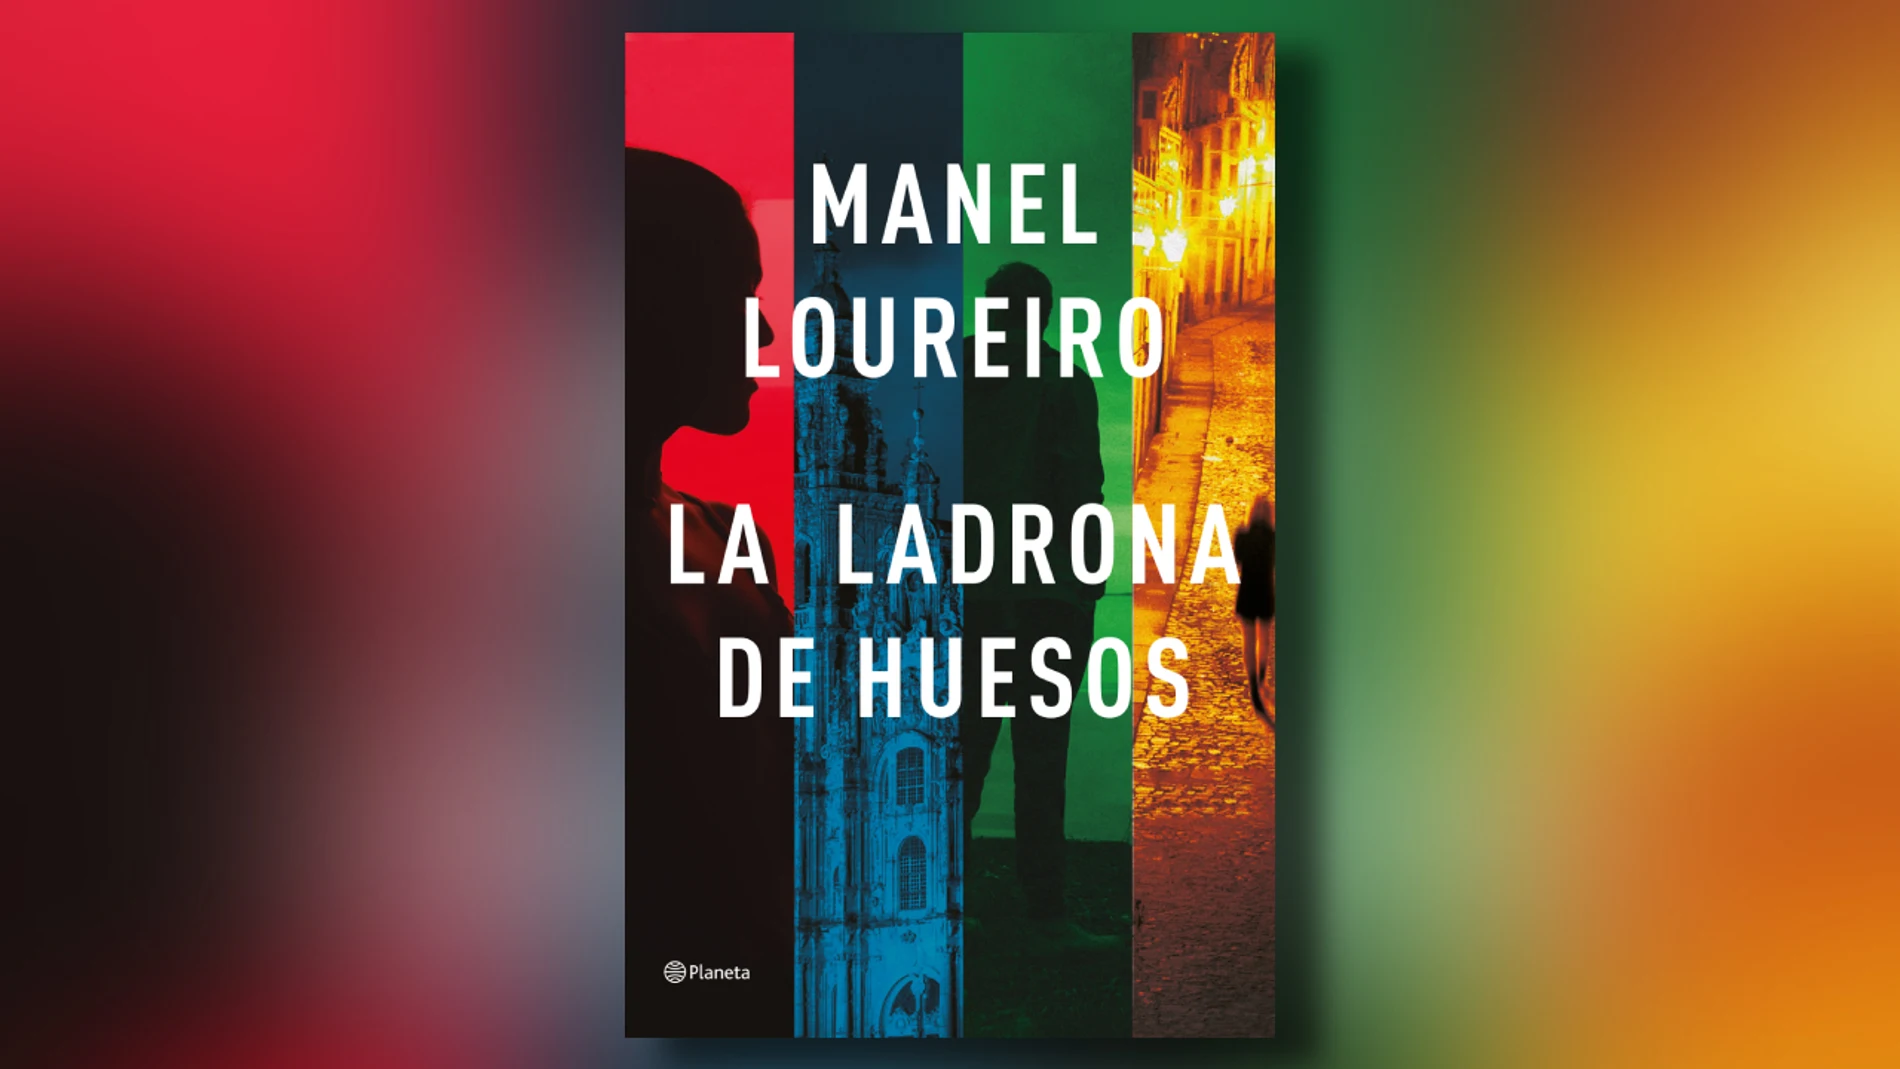 Portada del libro &#39;La ladrona de huesos&#39;, apasionante thriller de Manuel Loureiro